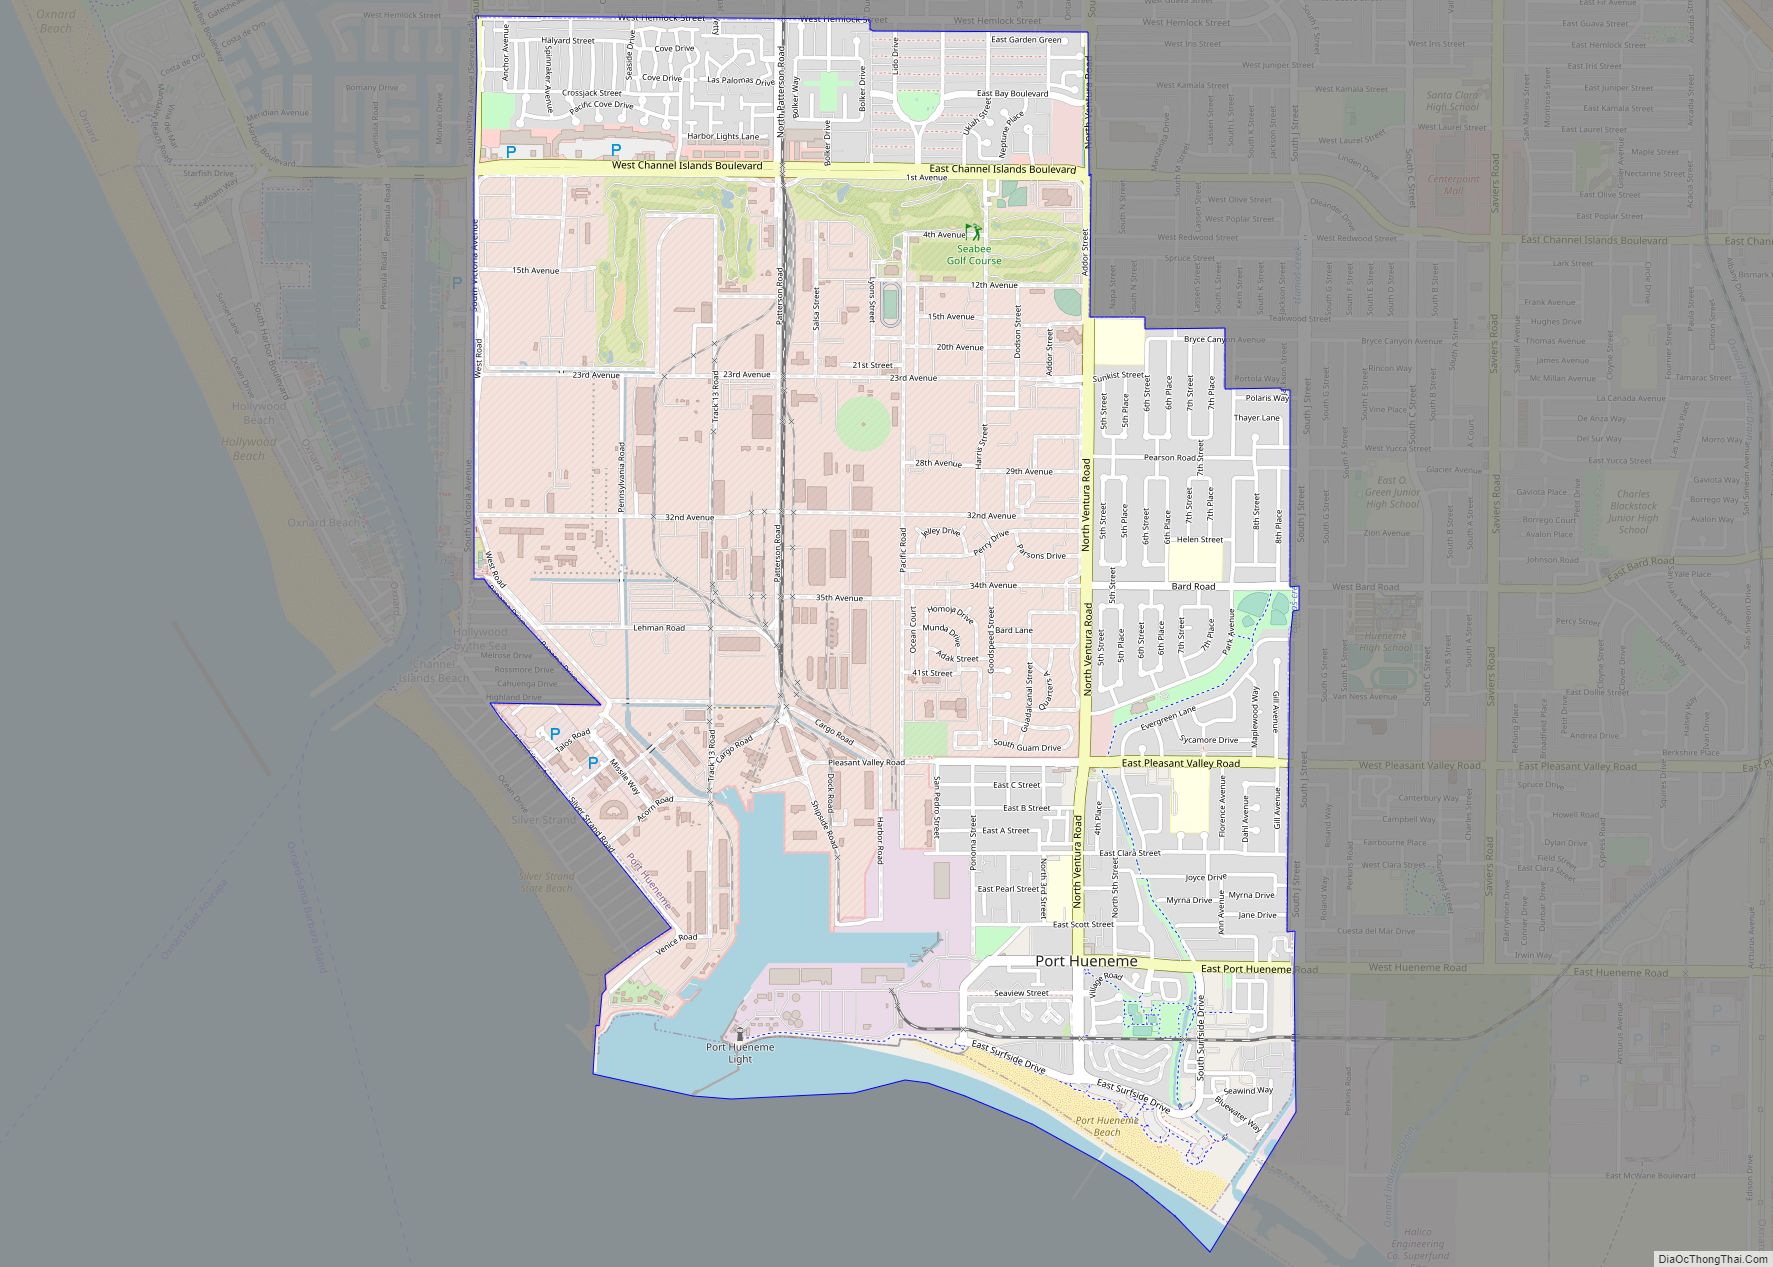 Map of Port Hueneme city